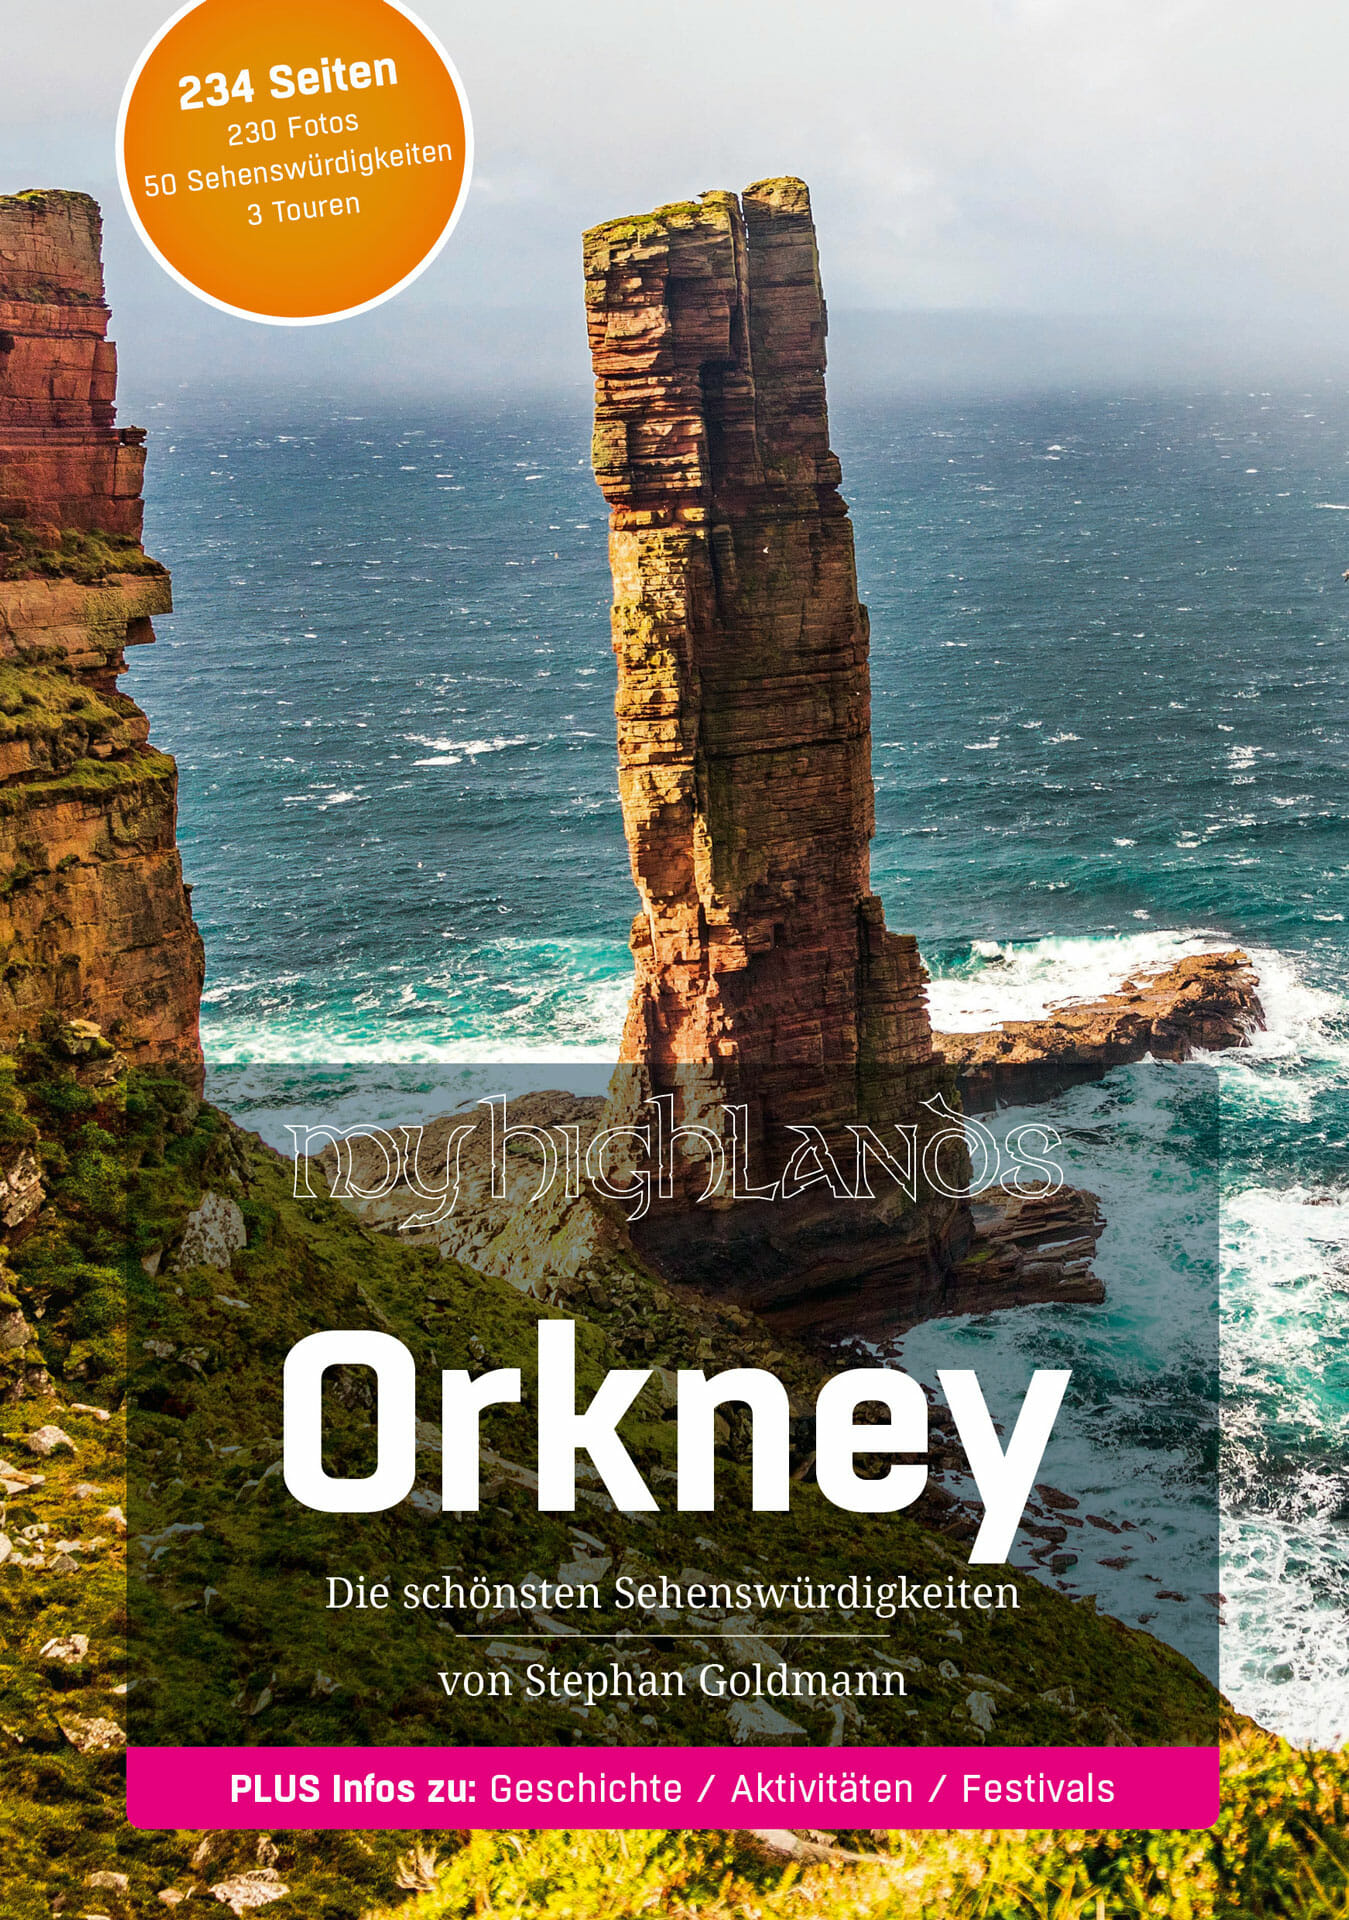 Titelseite des Reiseführers "MyHighlands.de – Orkney"